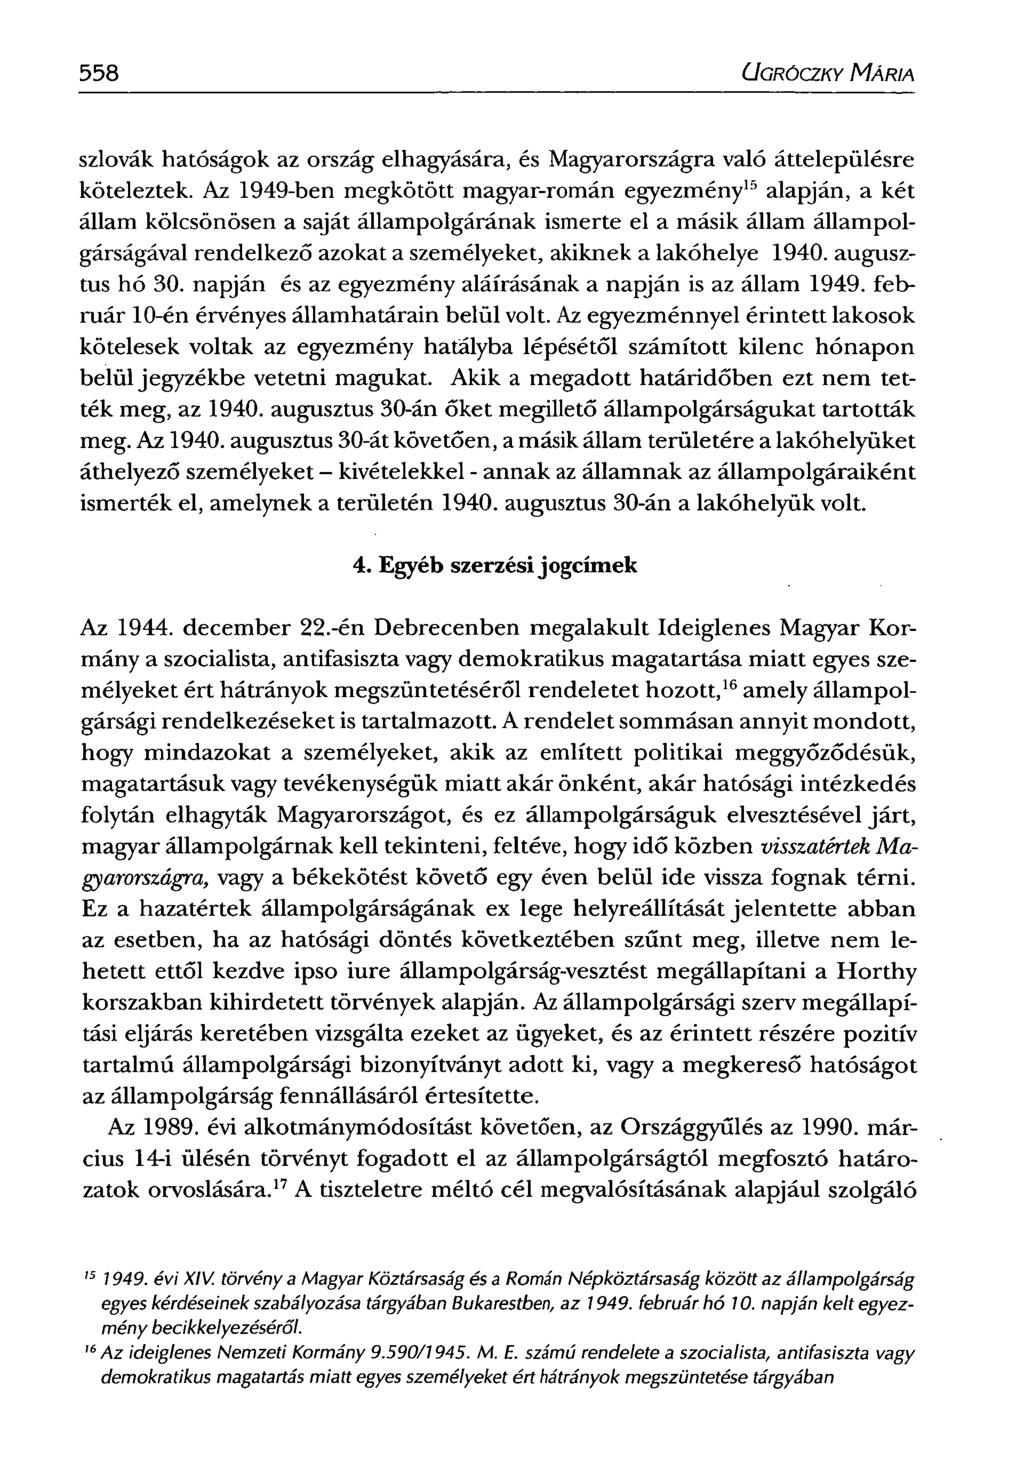 558 CJGRÓCZKY MÁRIA szlovák hatóságok az ország elhagyására, és Magyarországra való áttelepülésre köteleztek.